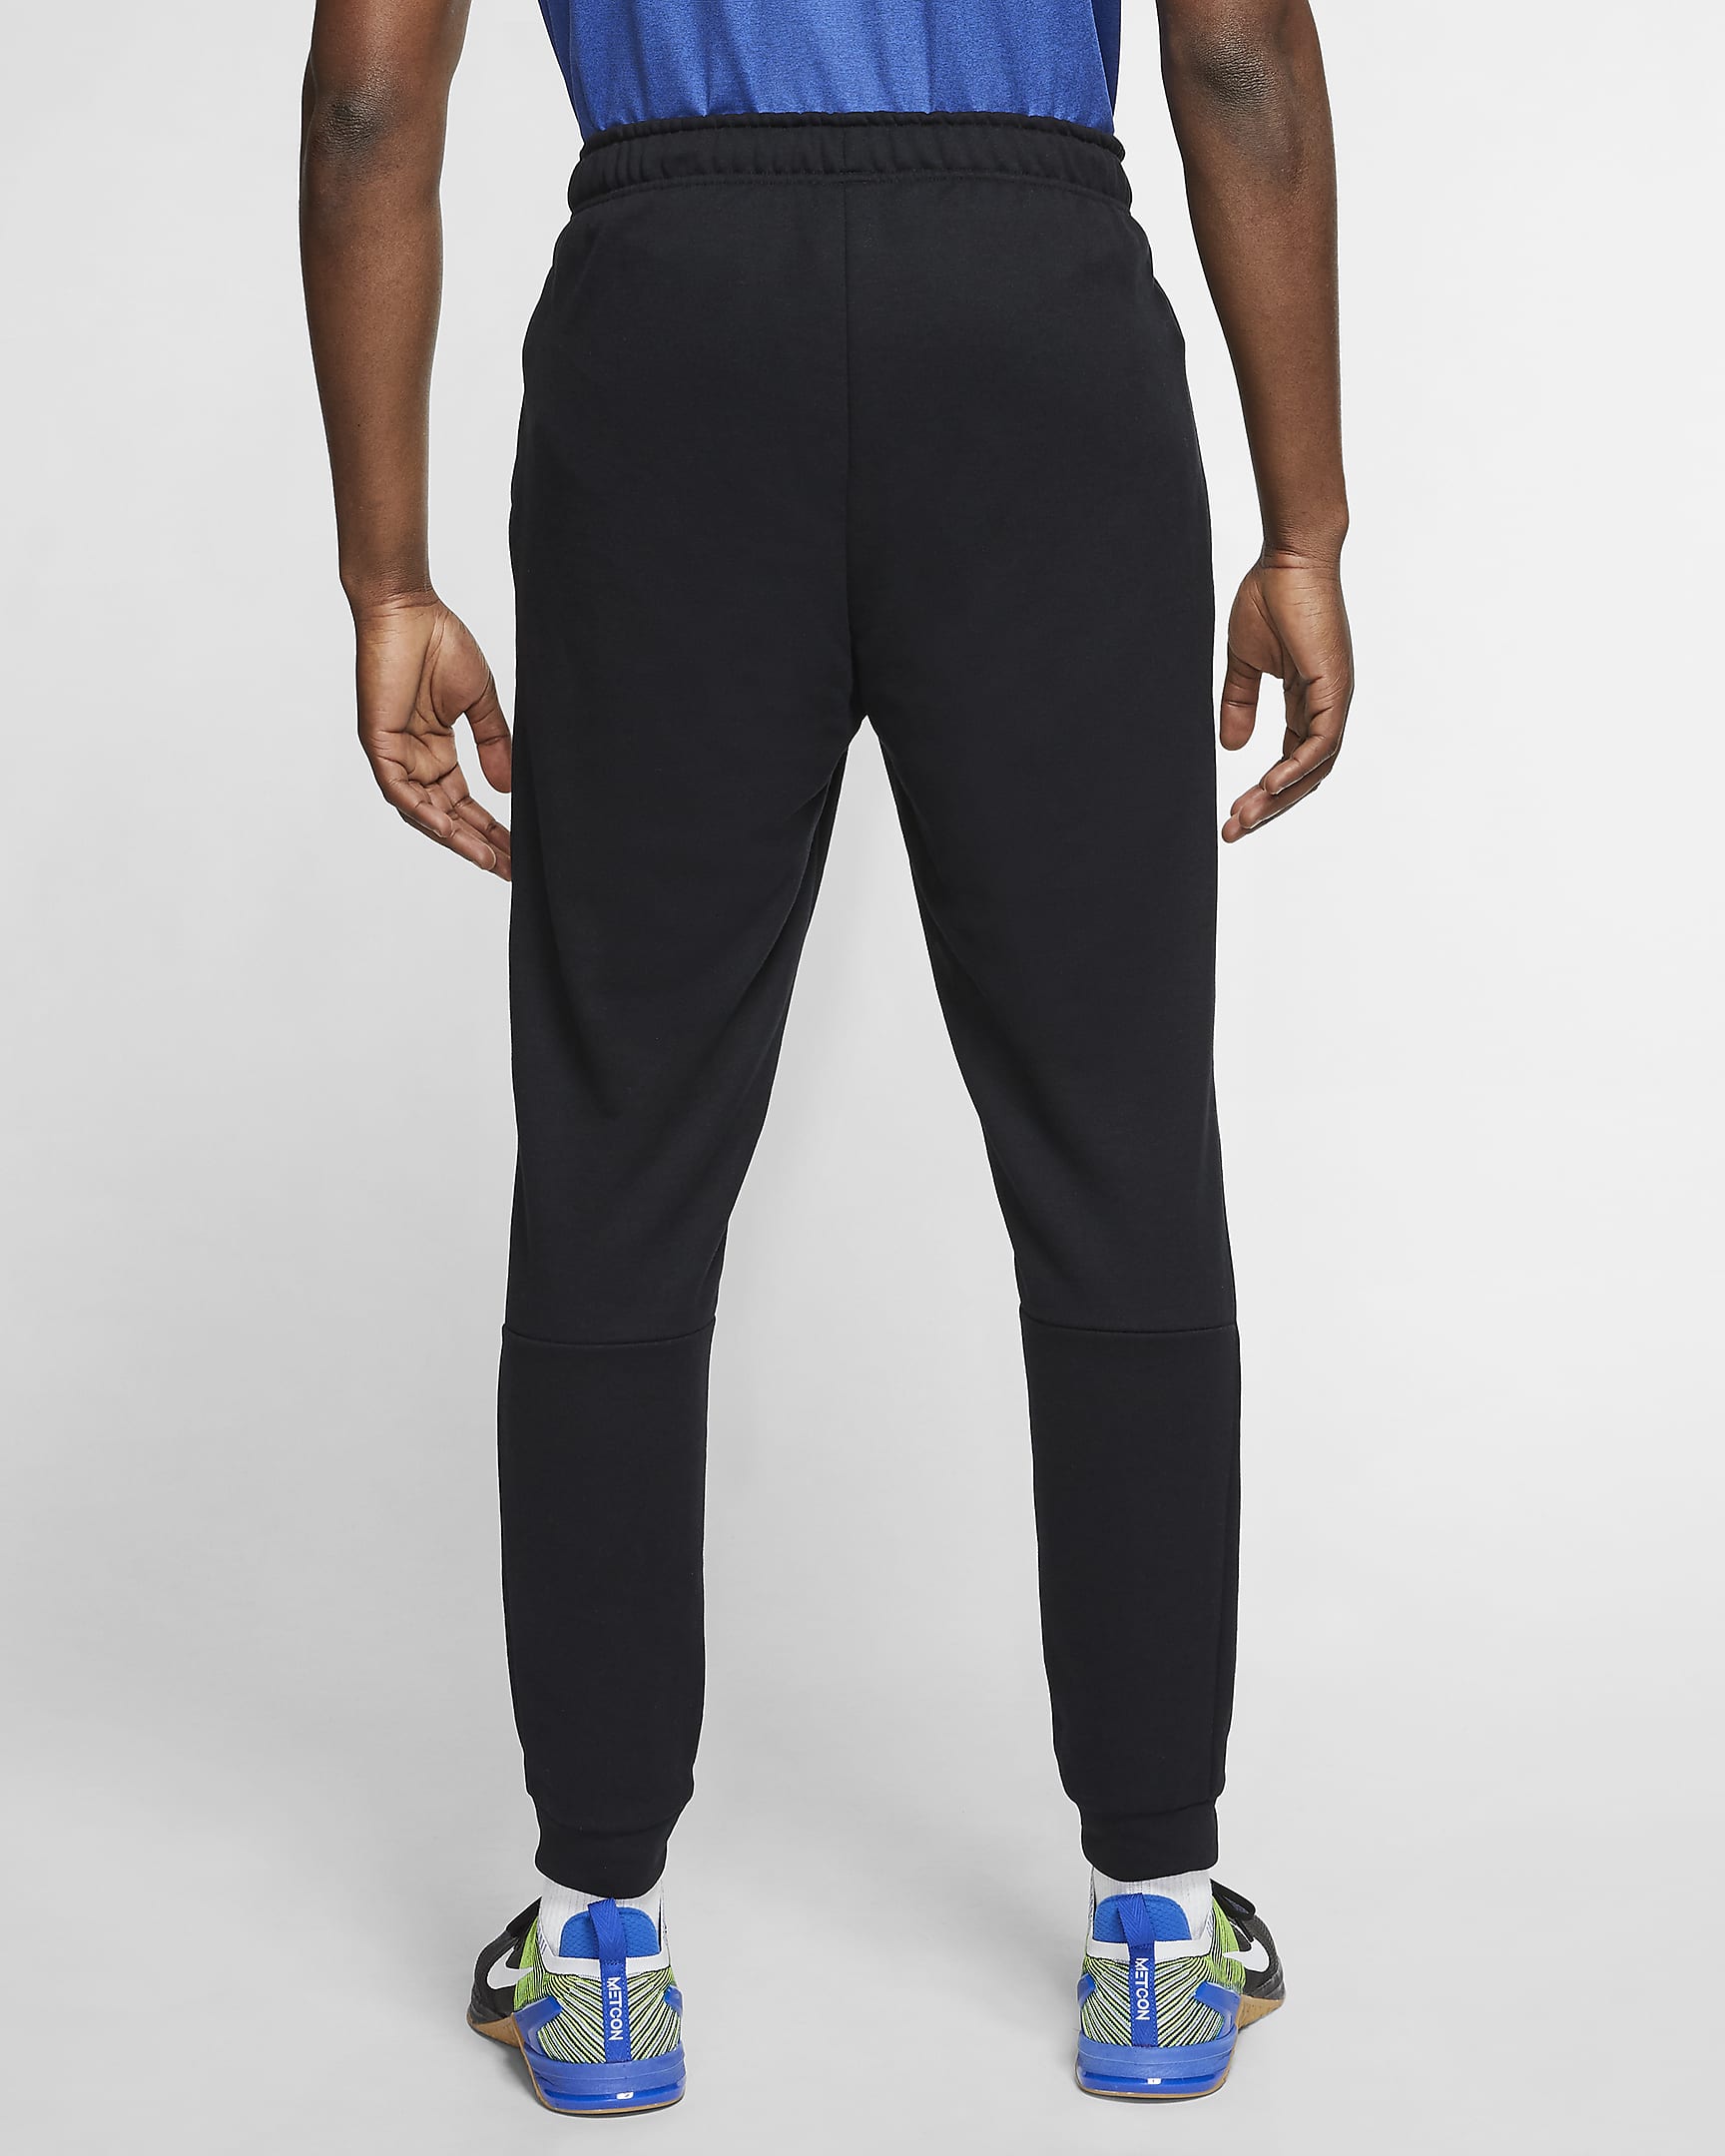 Nike Dri-FIT Men's Fleece Training Trousers. Nike VN